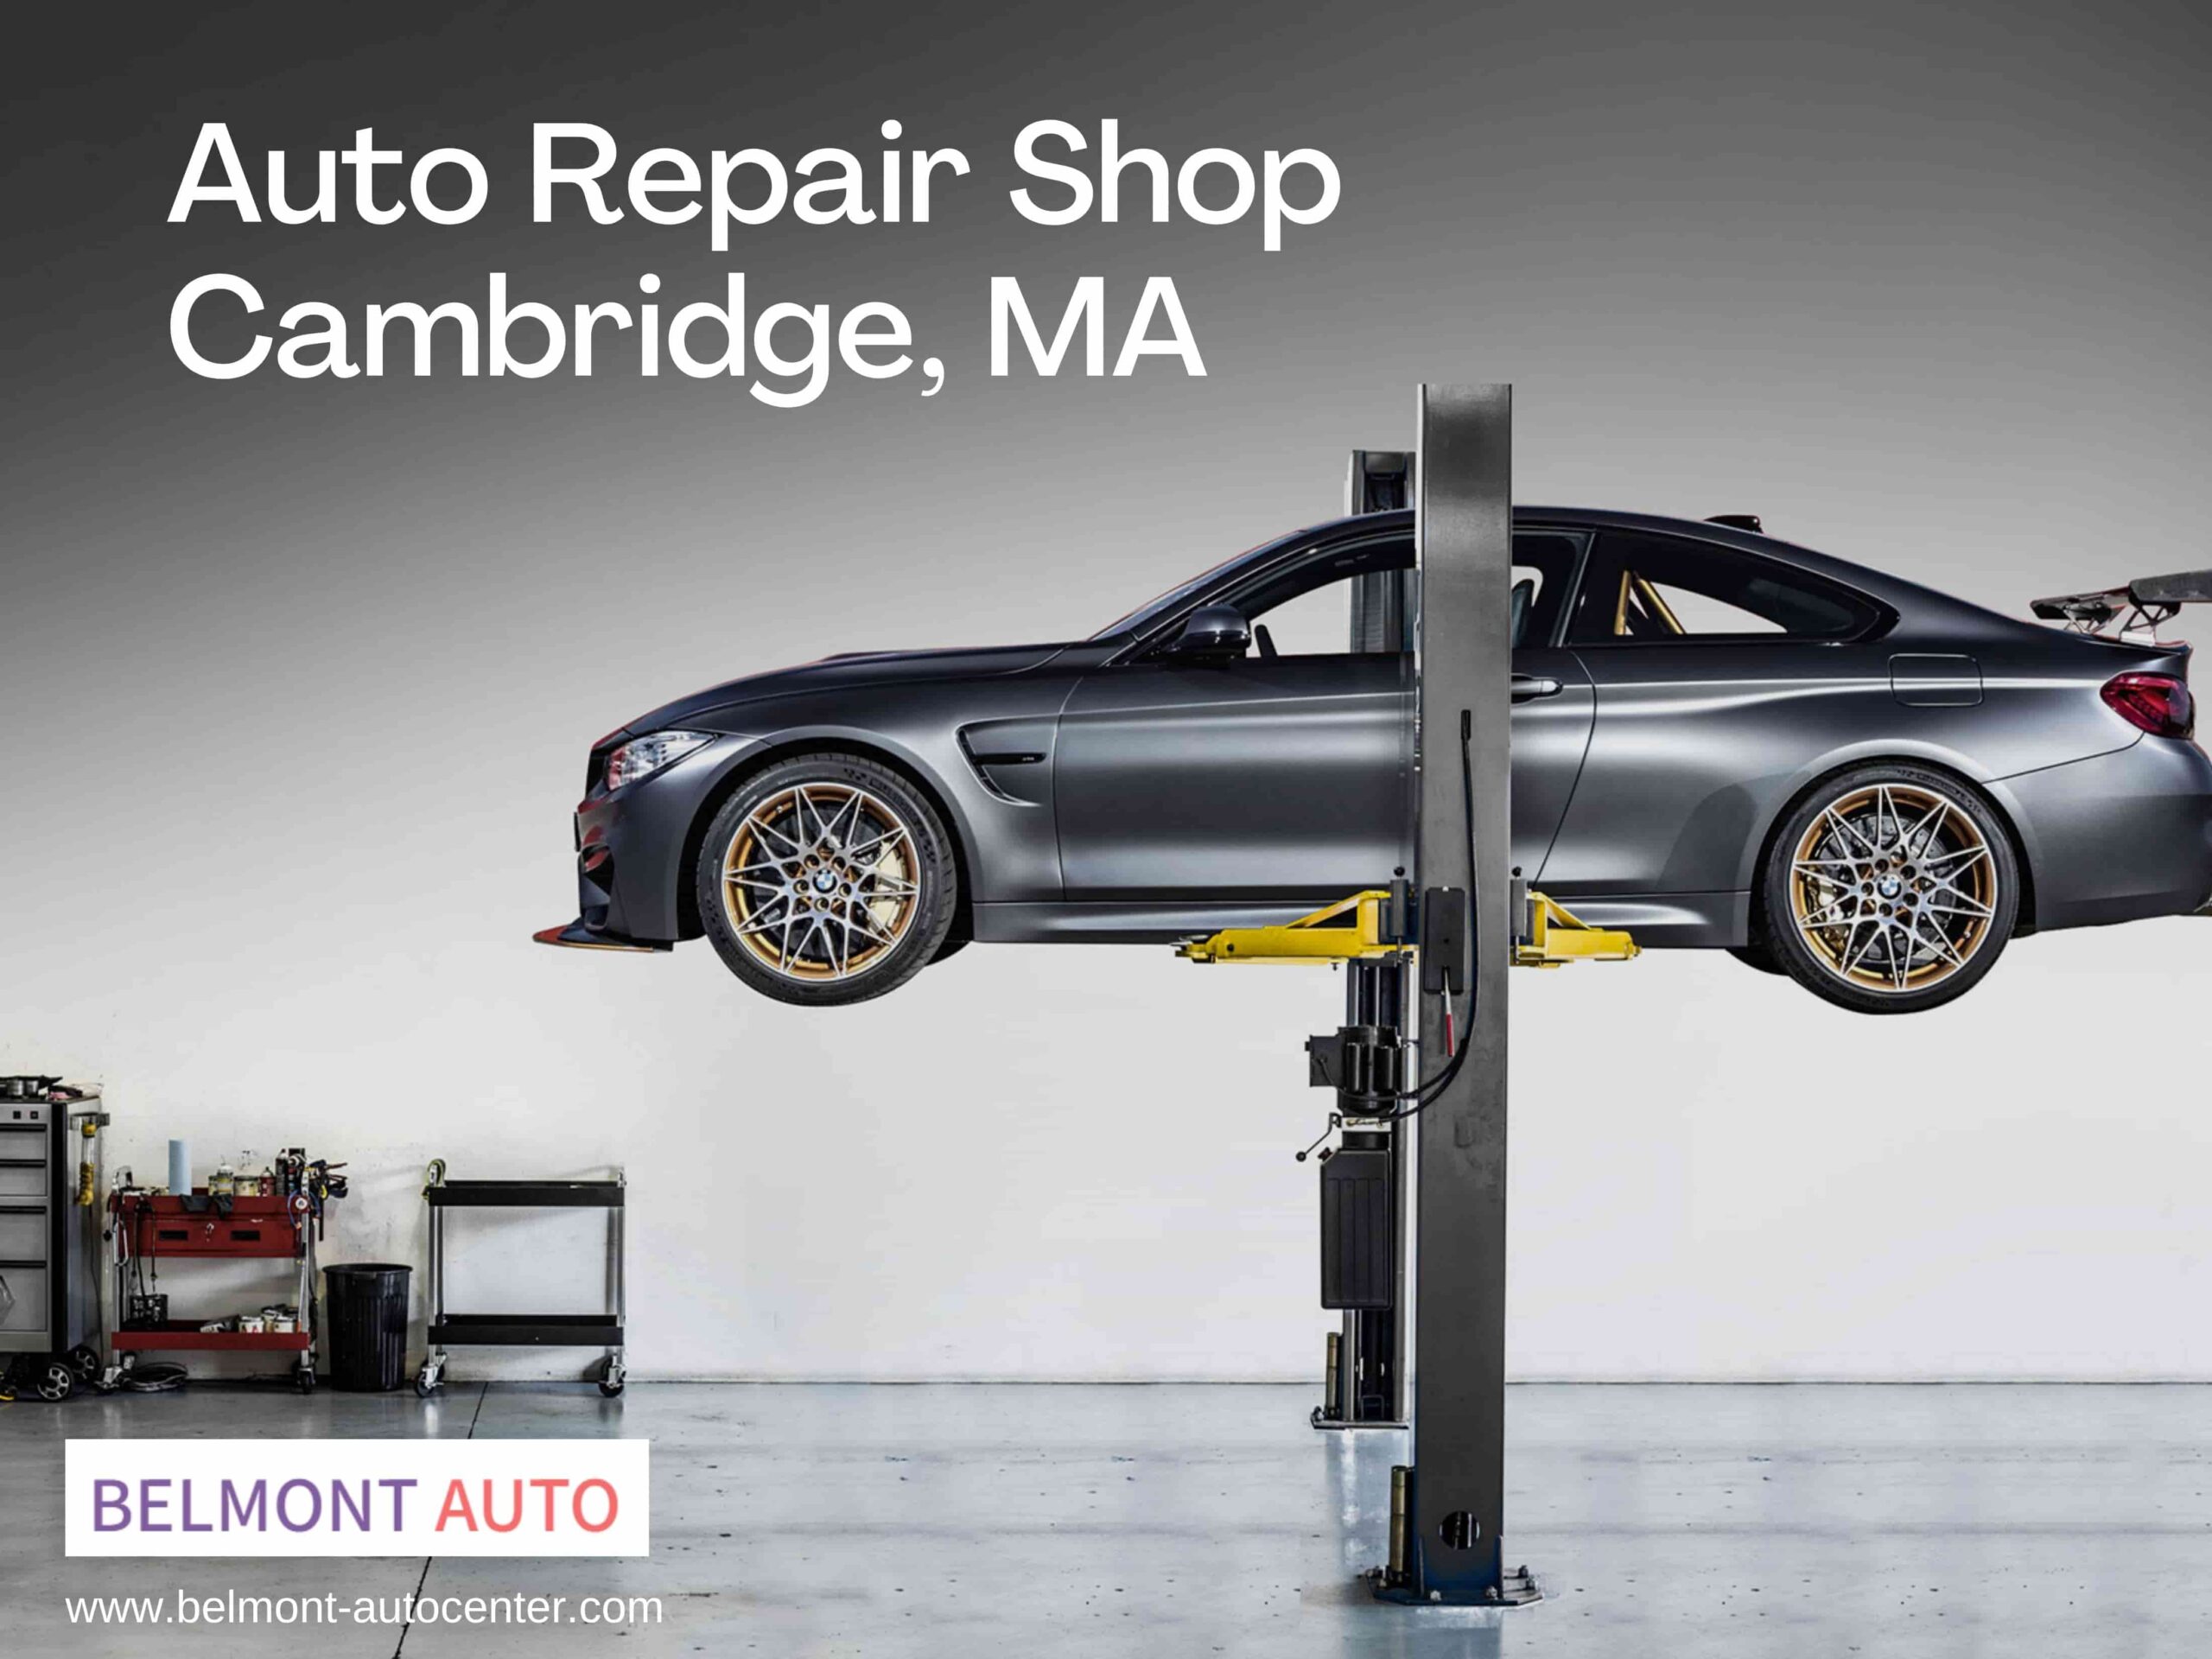 Auto Repair Shop in Cambridge, Ma Car Mechanic BelmontAuto Center